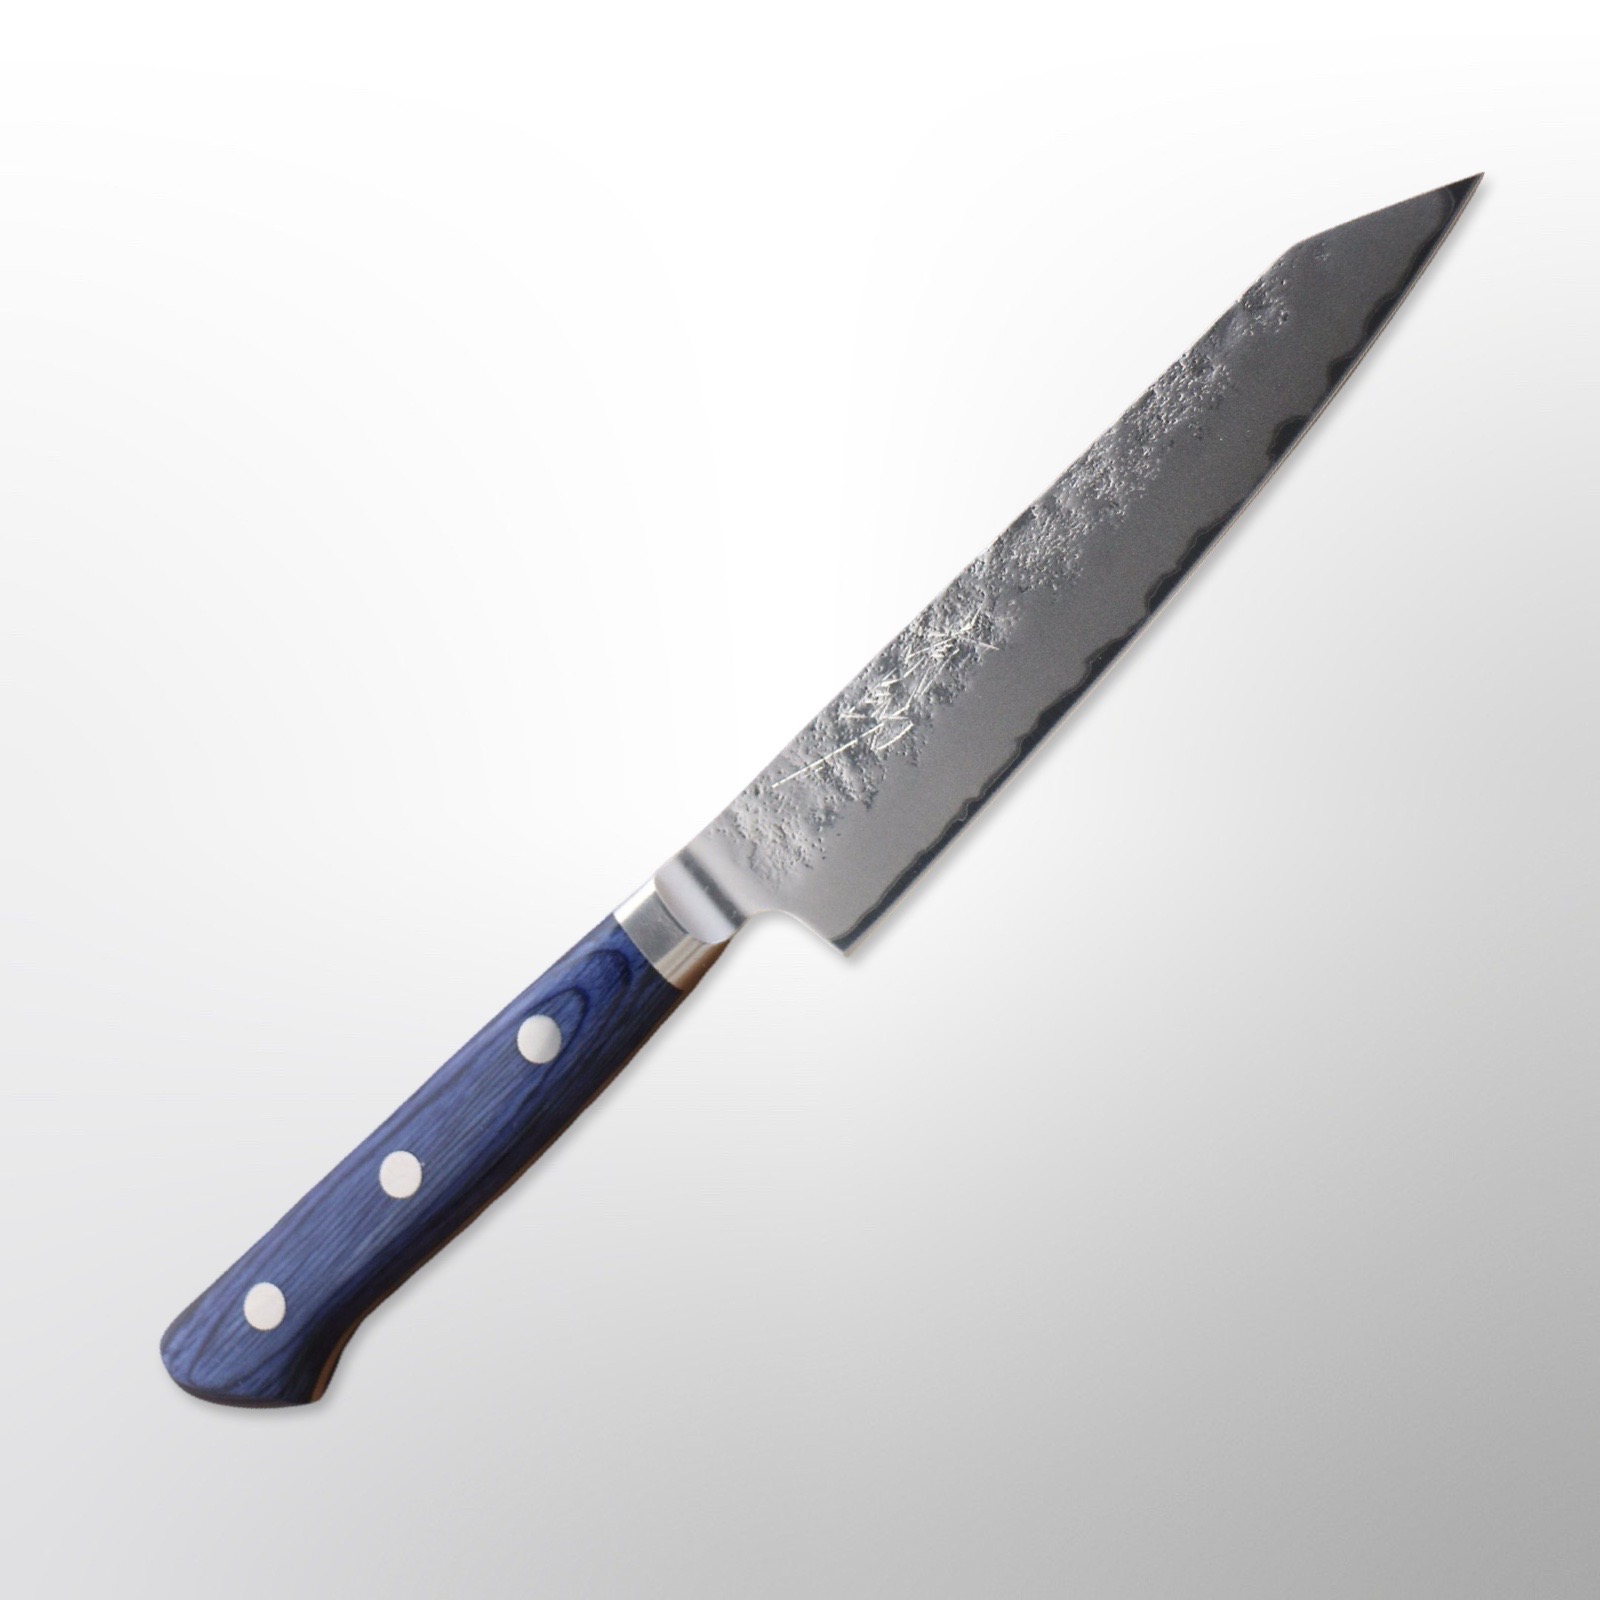 סכין עזר קירי פטי 145מ״מ פלדת ליבה AUS10 עטופה אל-חלד גימור מבריק עם ריקוע פטיש ידית מערבית צבע כחול טסונהיסה יפן [SKTSUNP145]